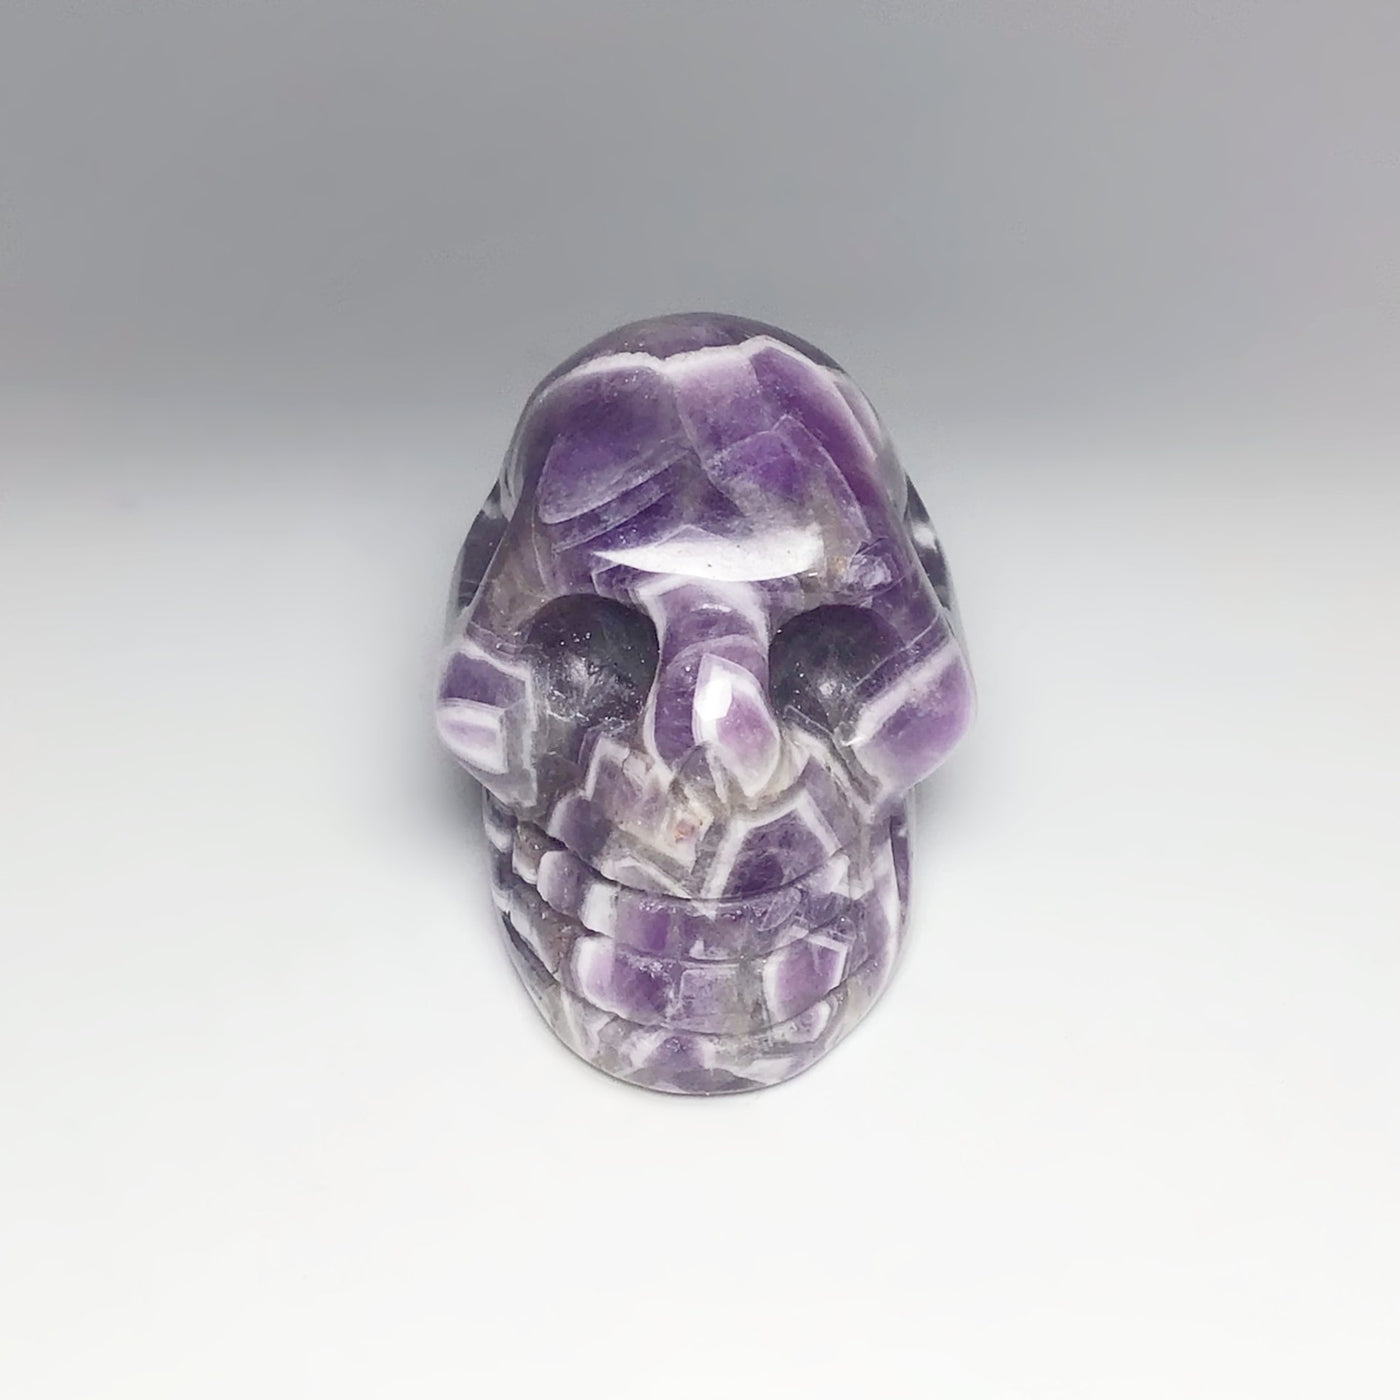 Carved Chevron Amethyst Crystal Skull